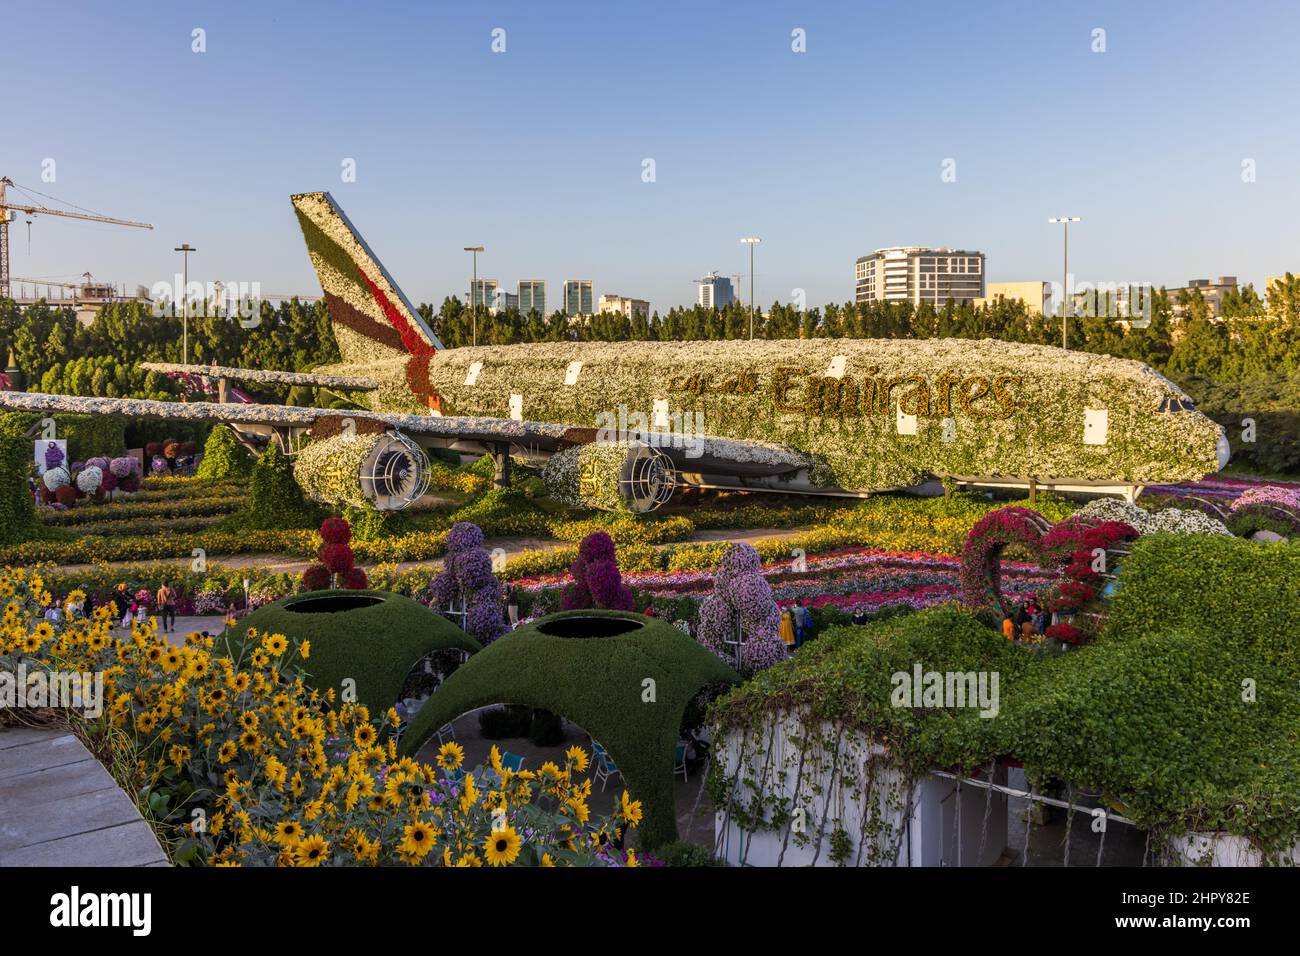 Ein mit Blumen bedeckter Emirates Airbus A380 im Dubai Miracle Garden, Vereinigte Arabische Emirate. Stockfoto